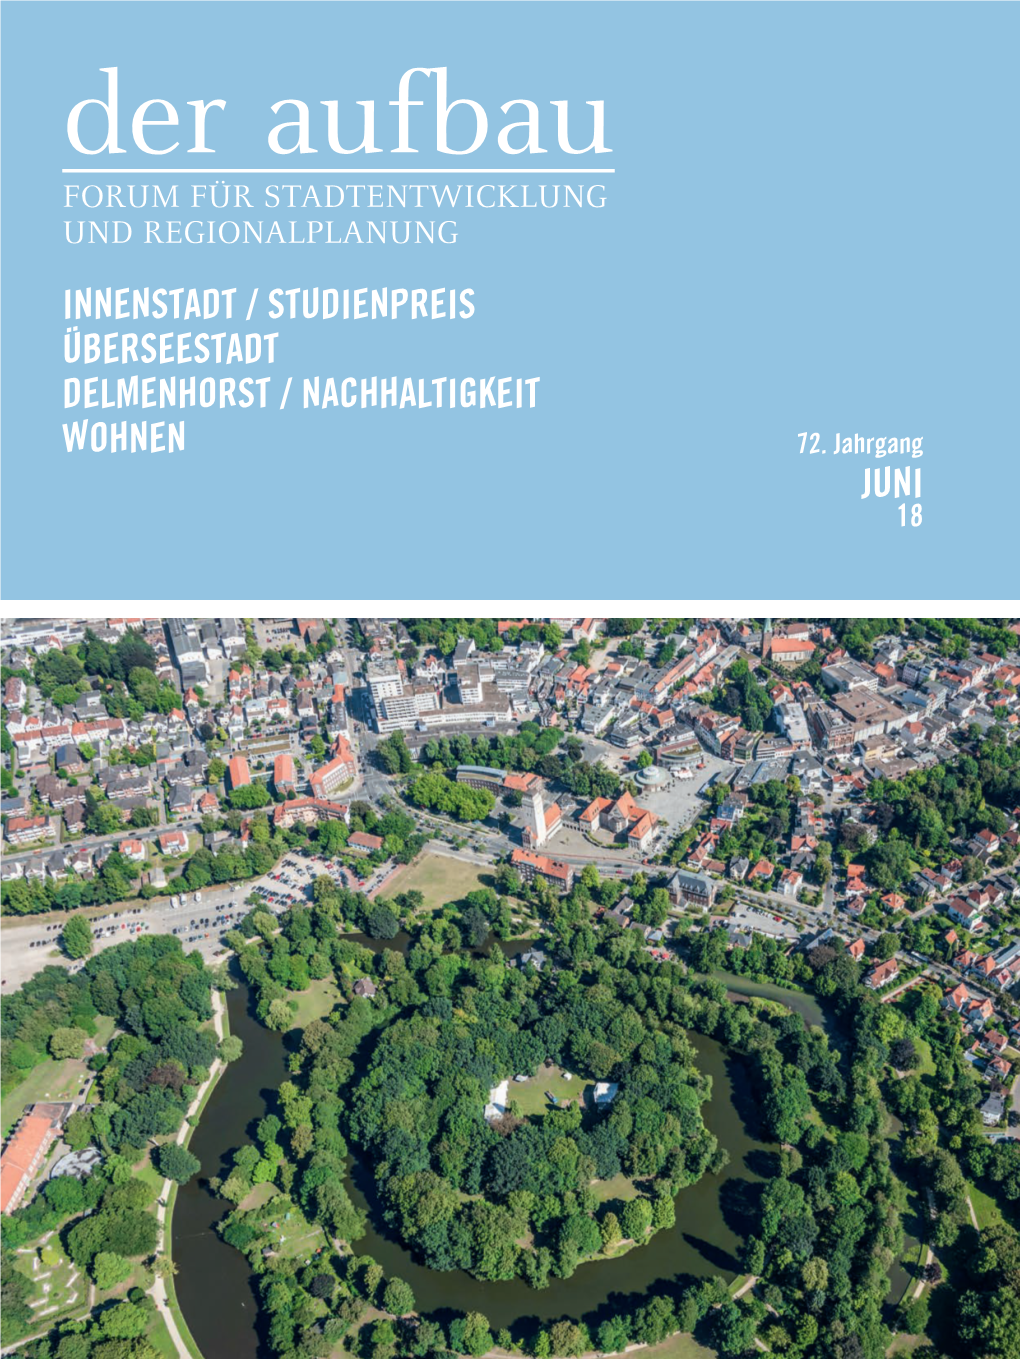 Innenstadt / Studienpreis Überseestadt Delmenhorst / Nachhaltigkeit Wohnen 72